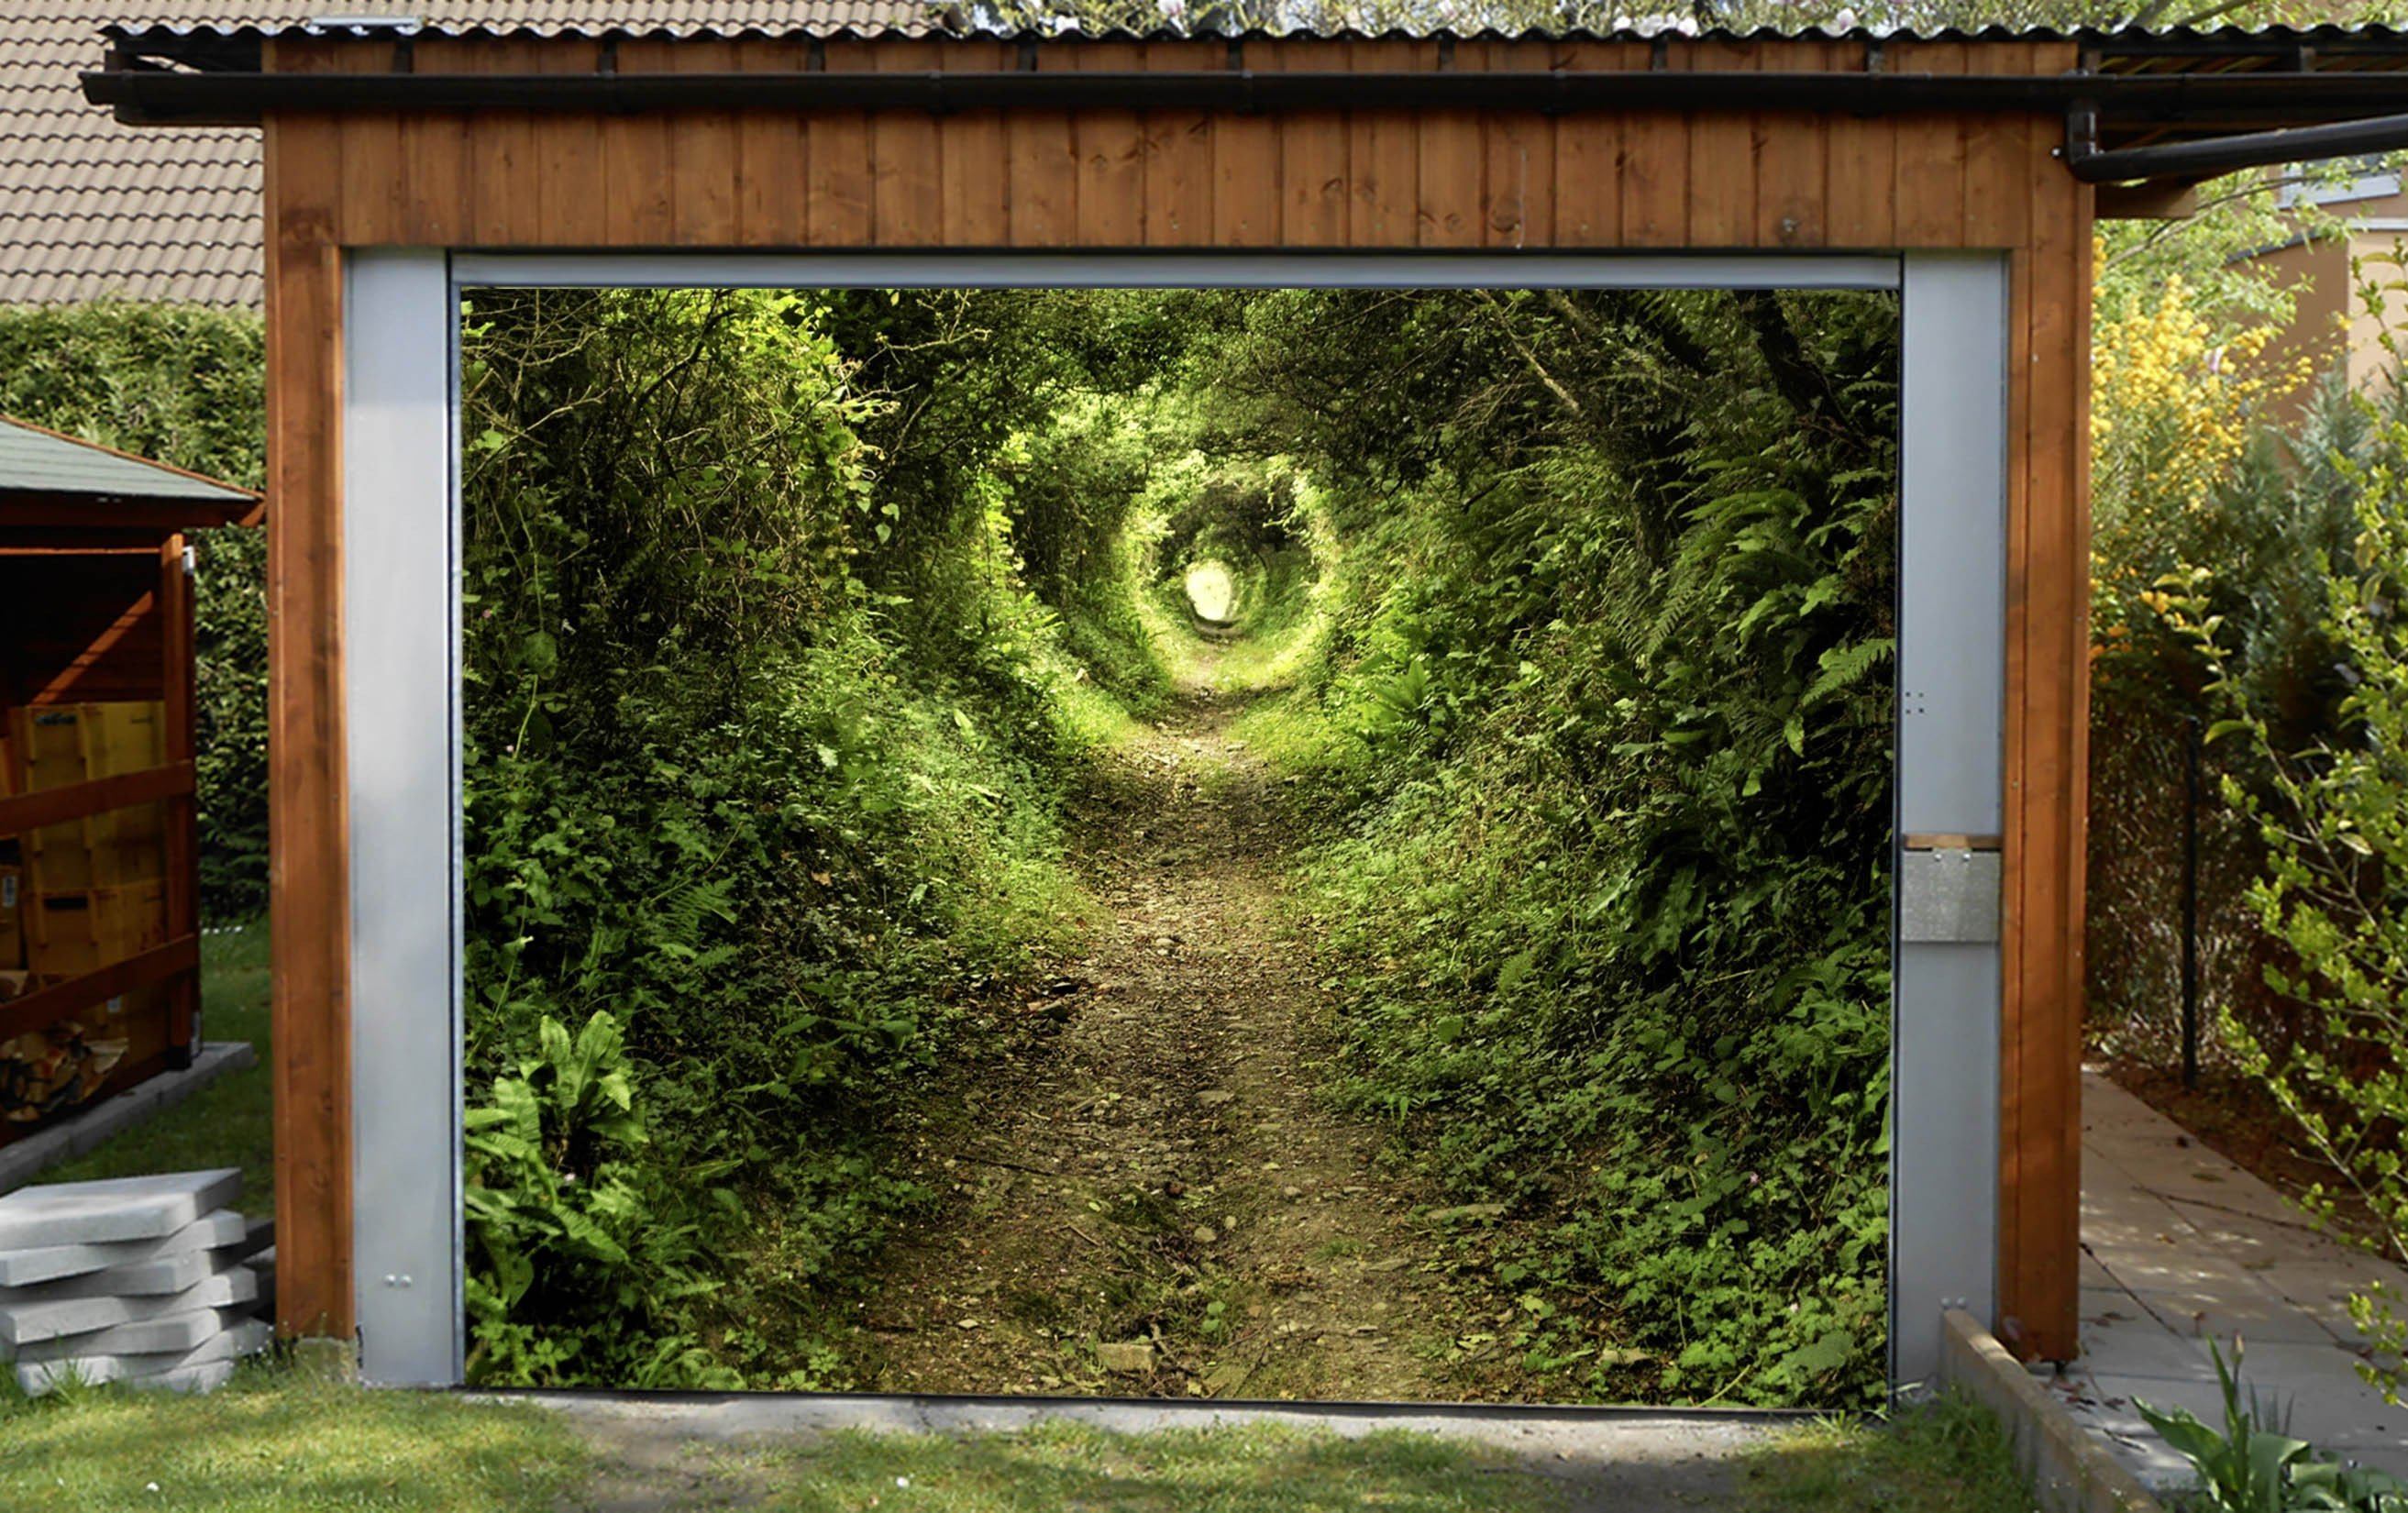 3D Green Weeds Tunnel 319 Garage Door Mural Wallpaper AJ Wallpaper 